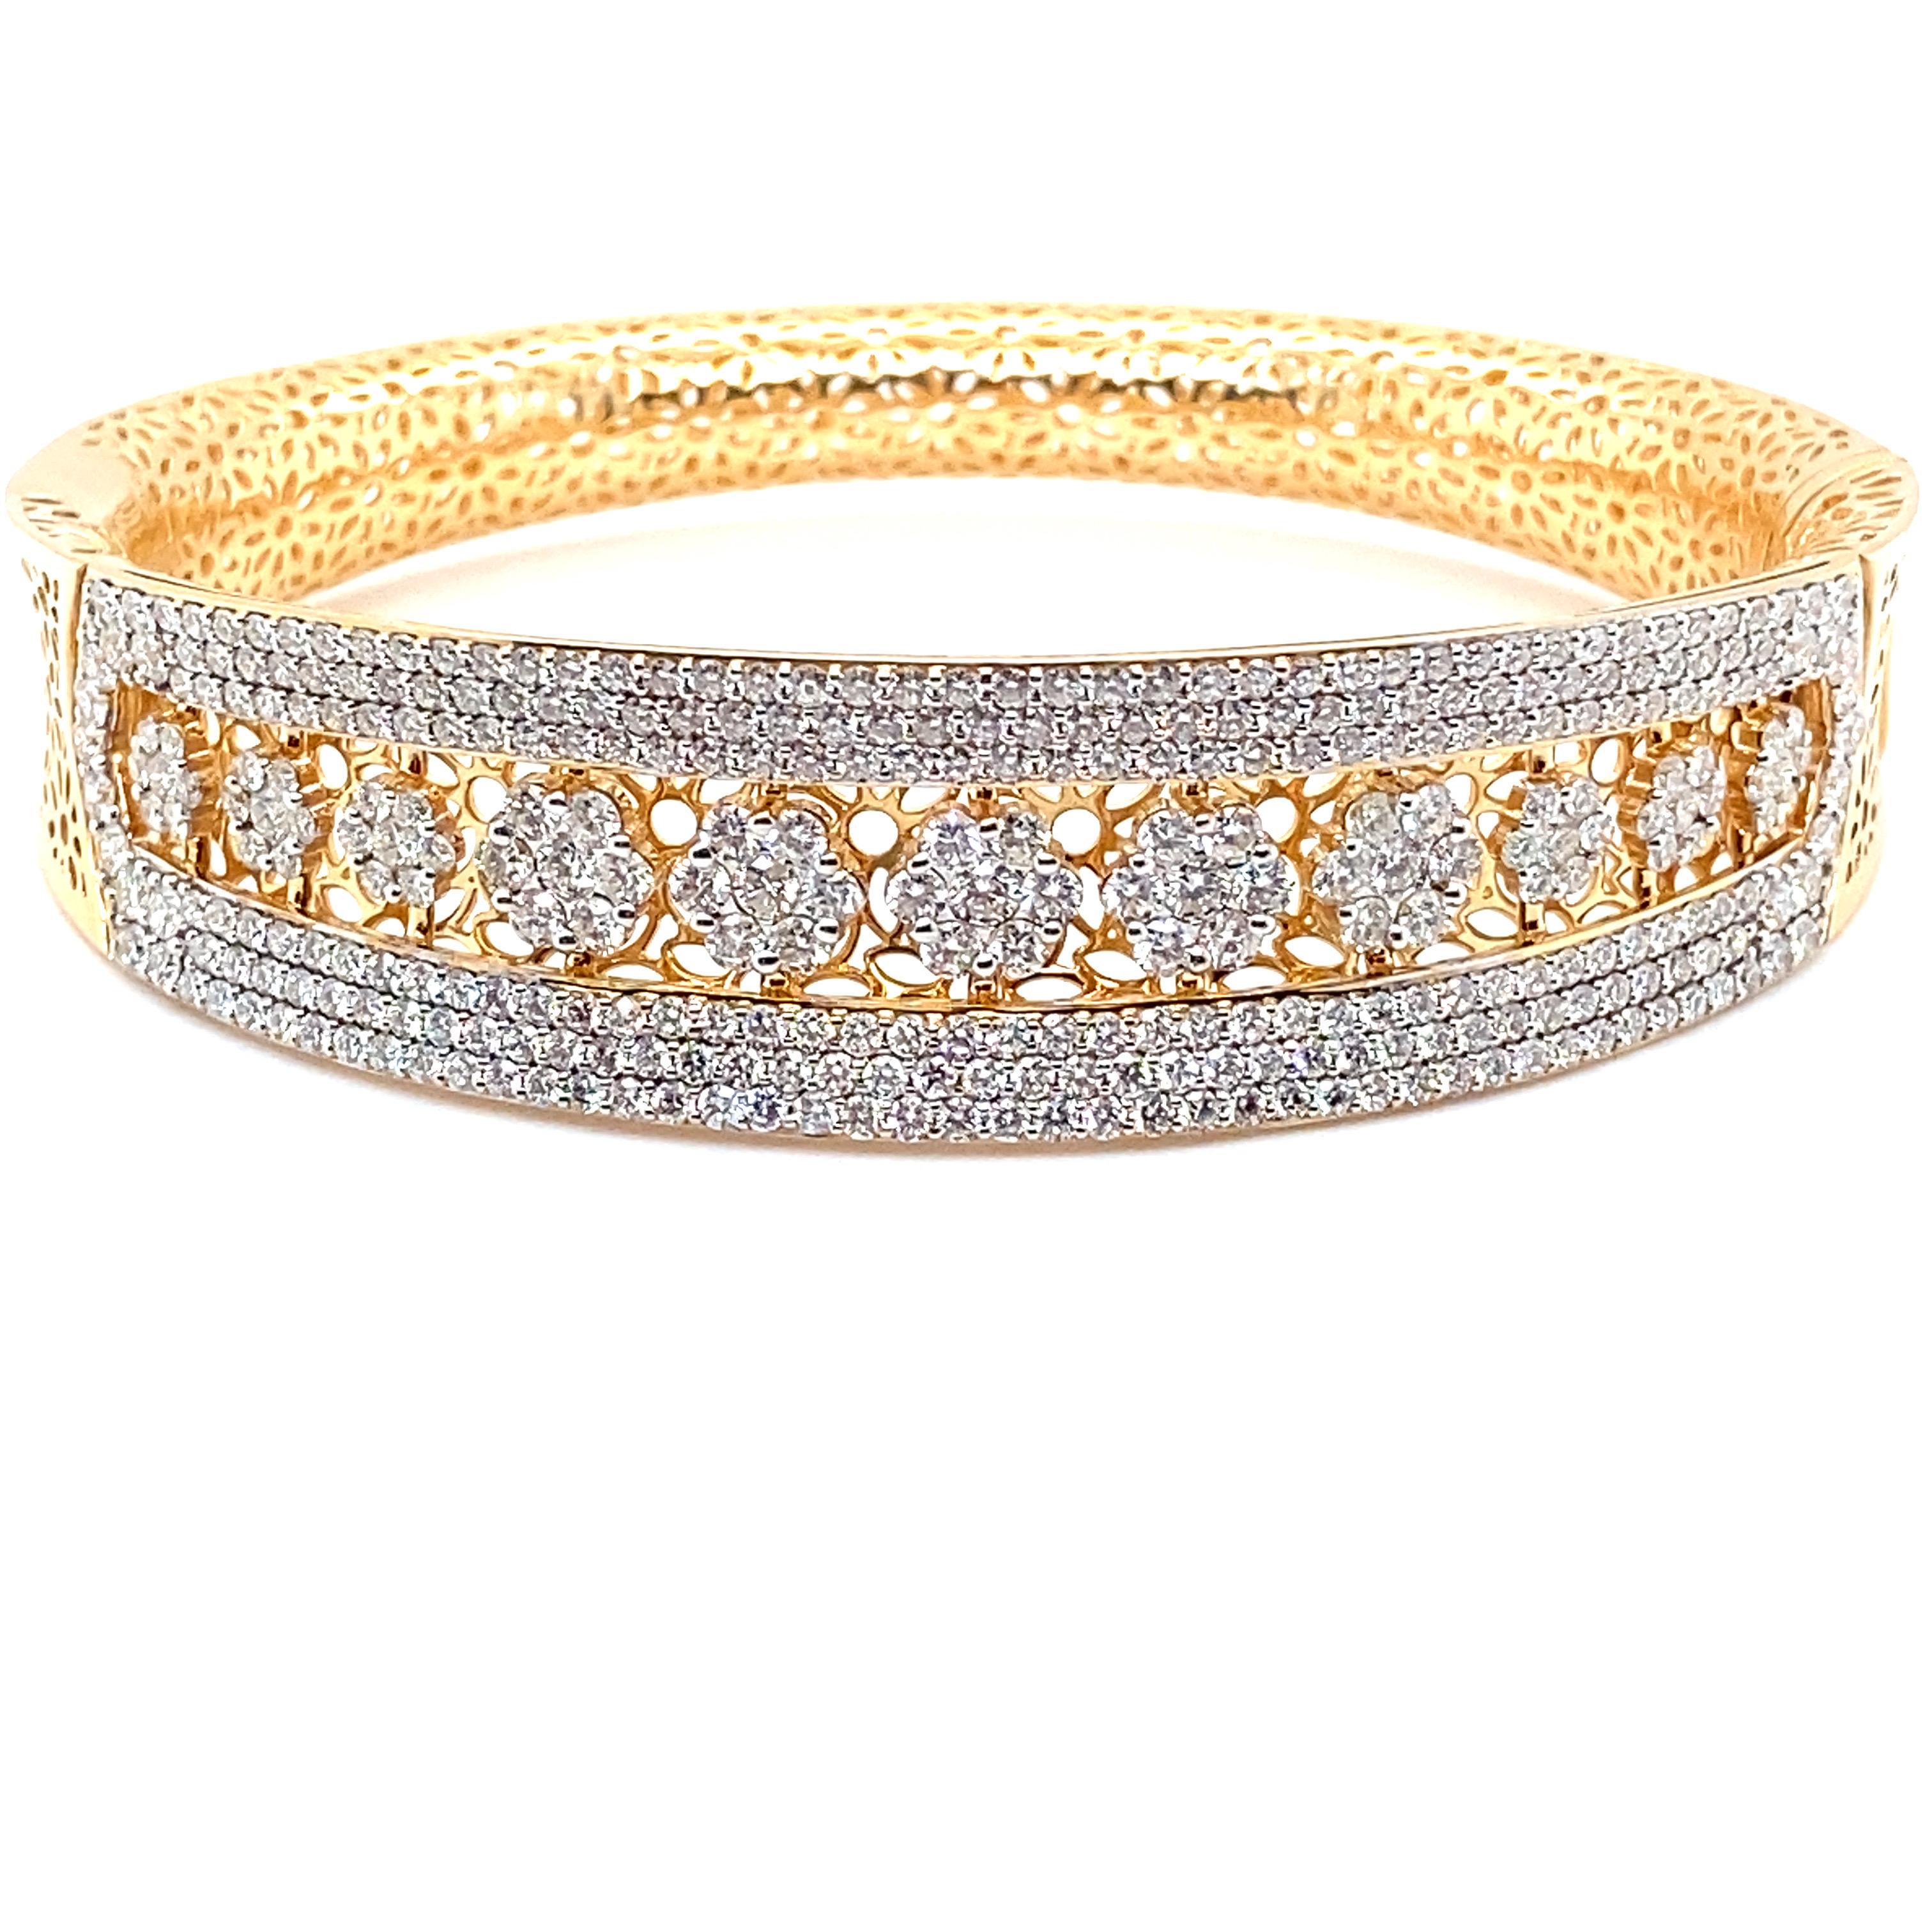 Ce bracelet manchette/bangle en diamant de 6,19 carats est magnifiquement réalisé en or jaune 18 carats. La partie supérieure du bracelet, de forme circulaire, est ornée de diamants blancs. Ce bracelet ouvrable est doté d'une galerie complète qui